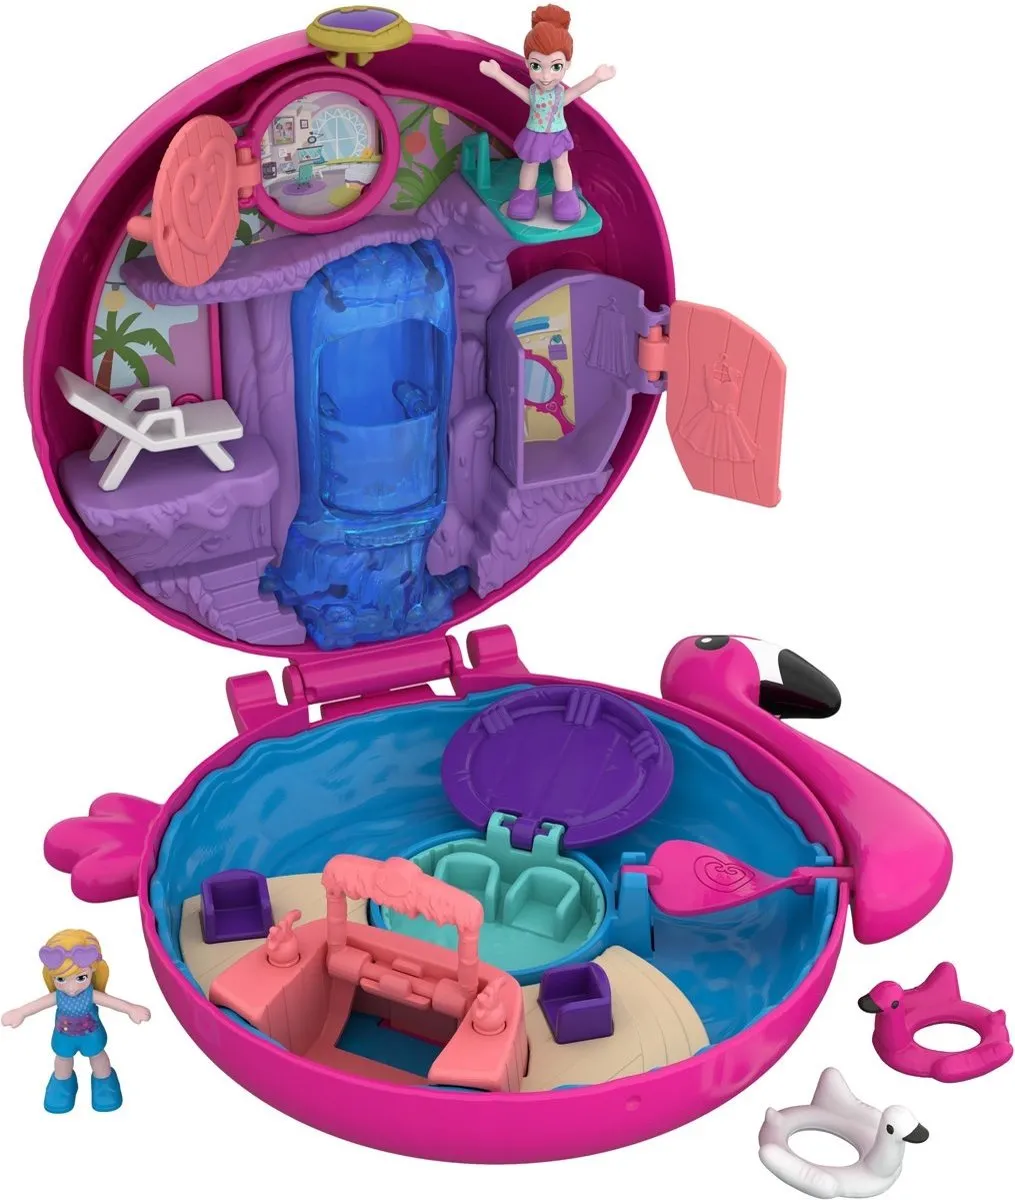 Polly Pocket Pocket World Flamingo Floatie - Speelfigurenset speelgoed